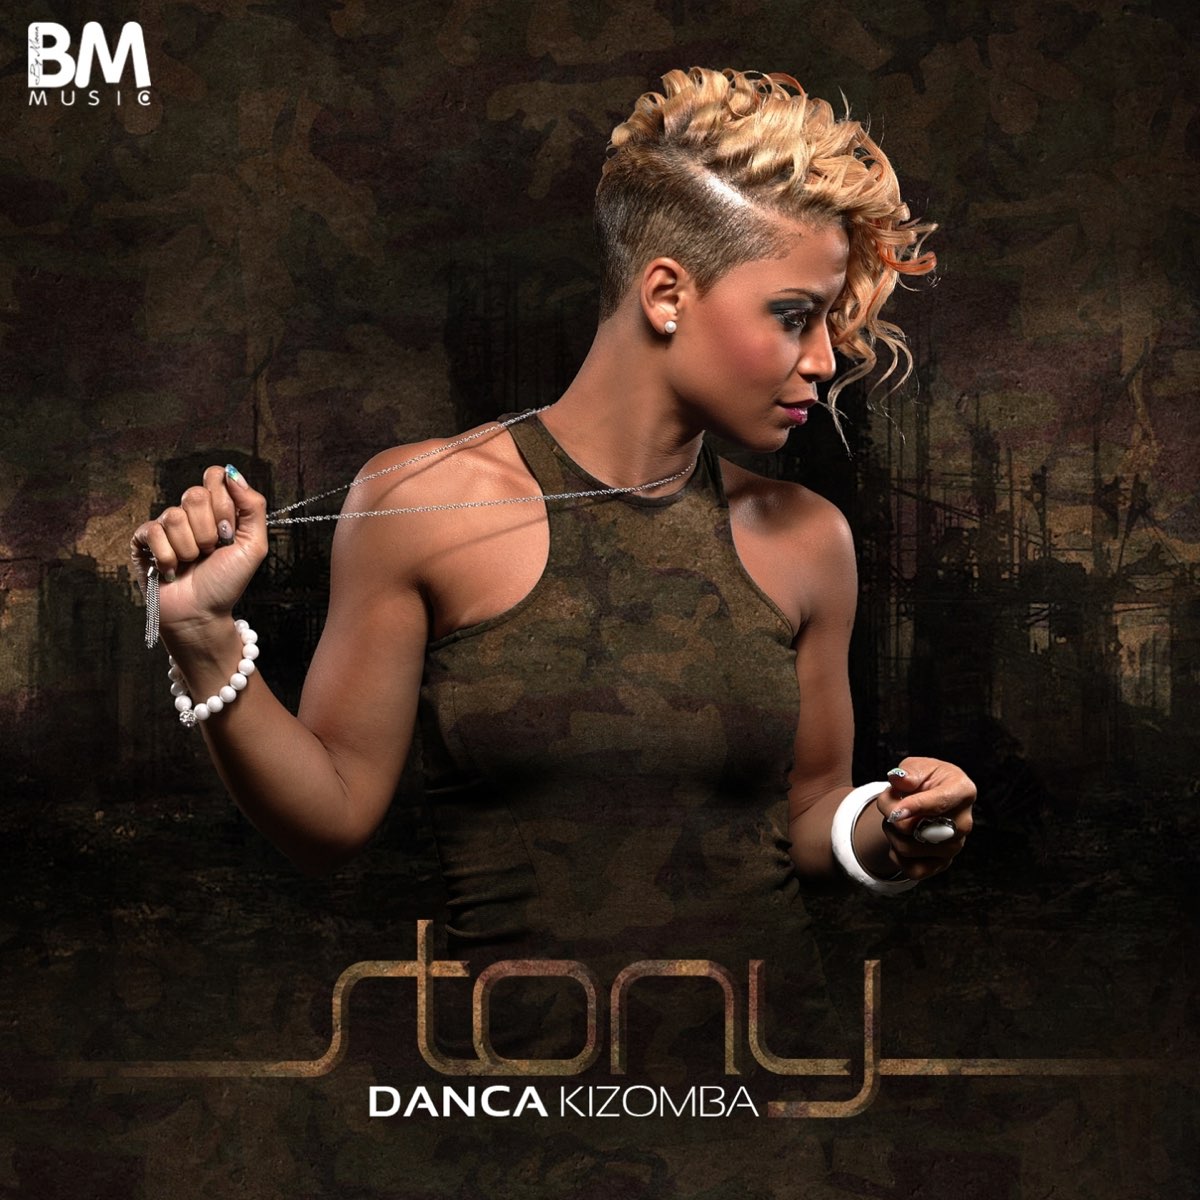 Dança Kizomba - Single by Stony on Apple Music